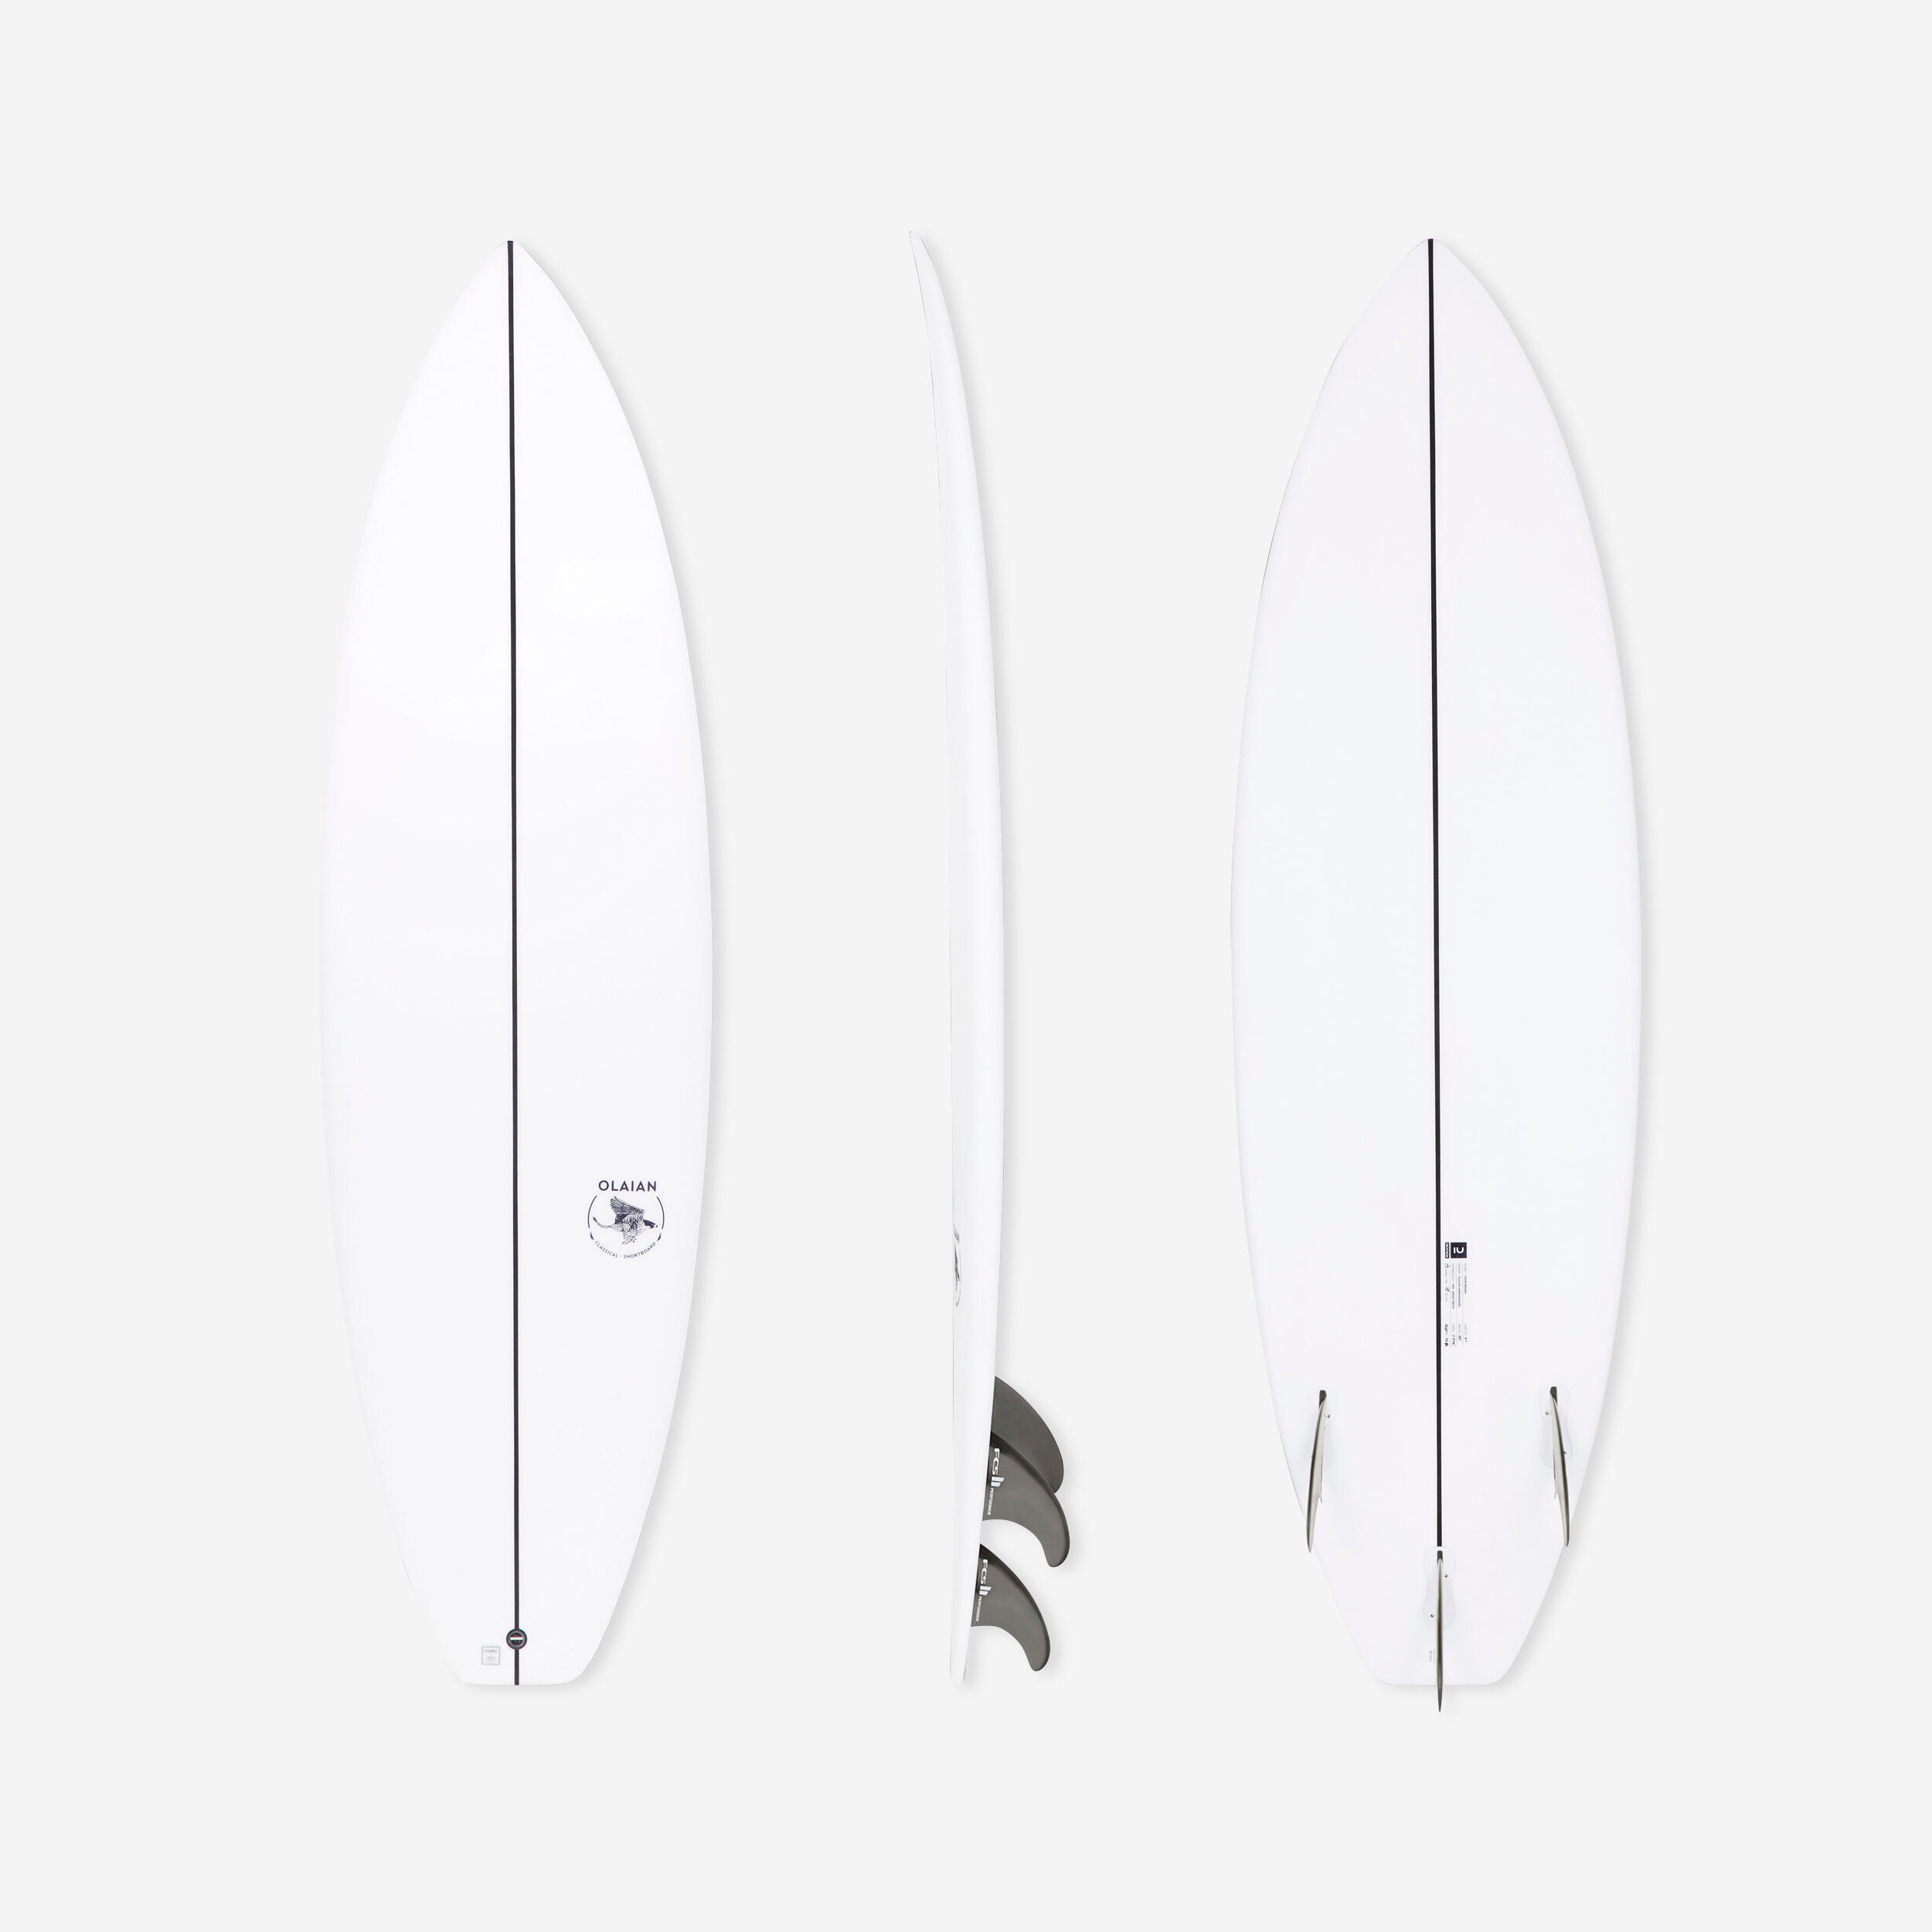 OLAIAN Surfboard Shortboard 900 6'1